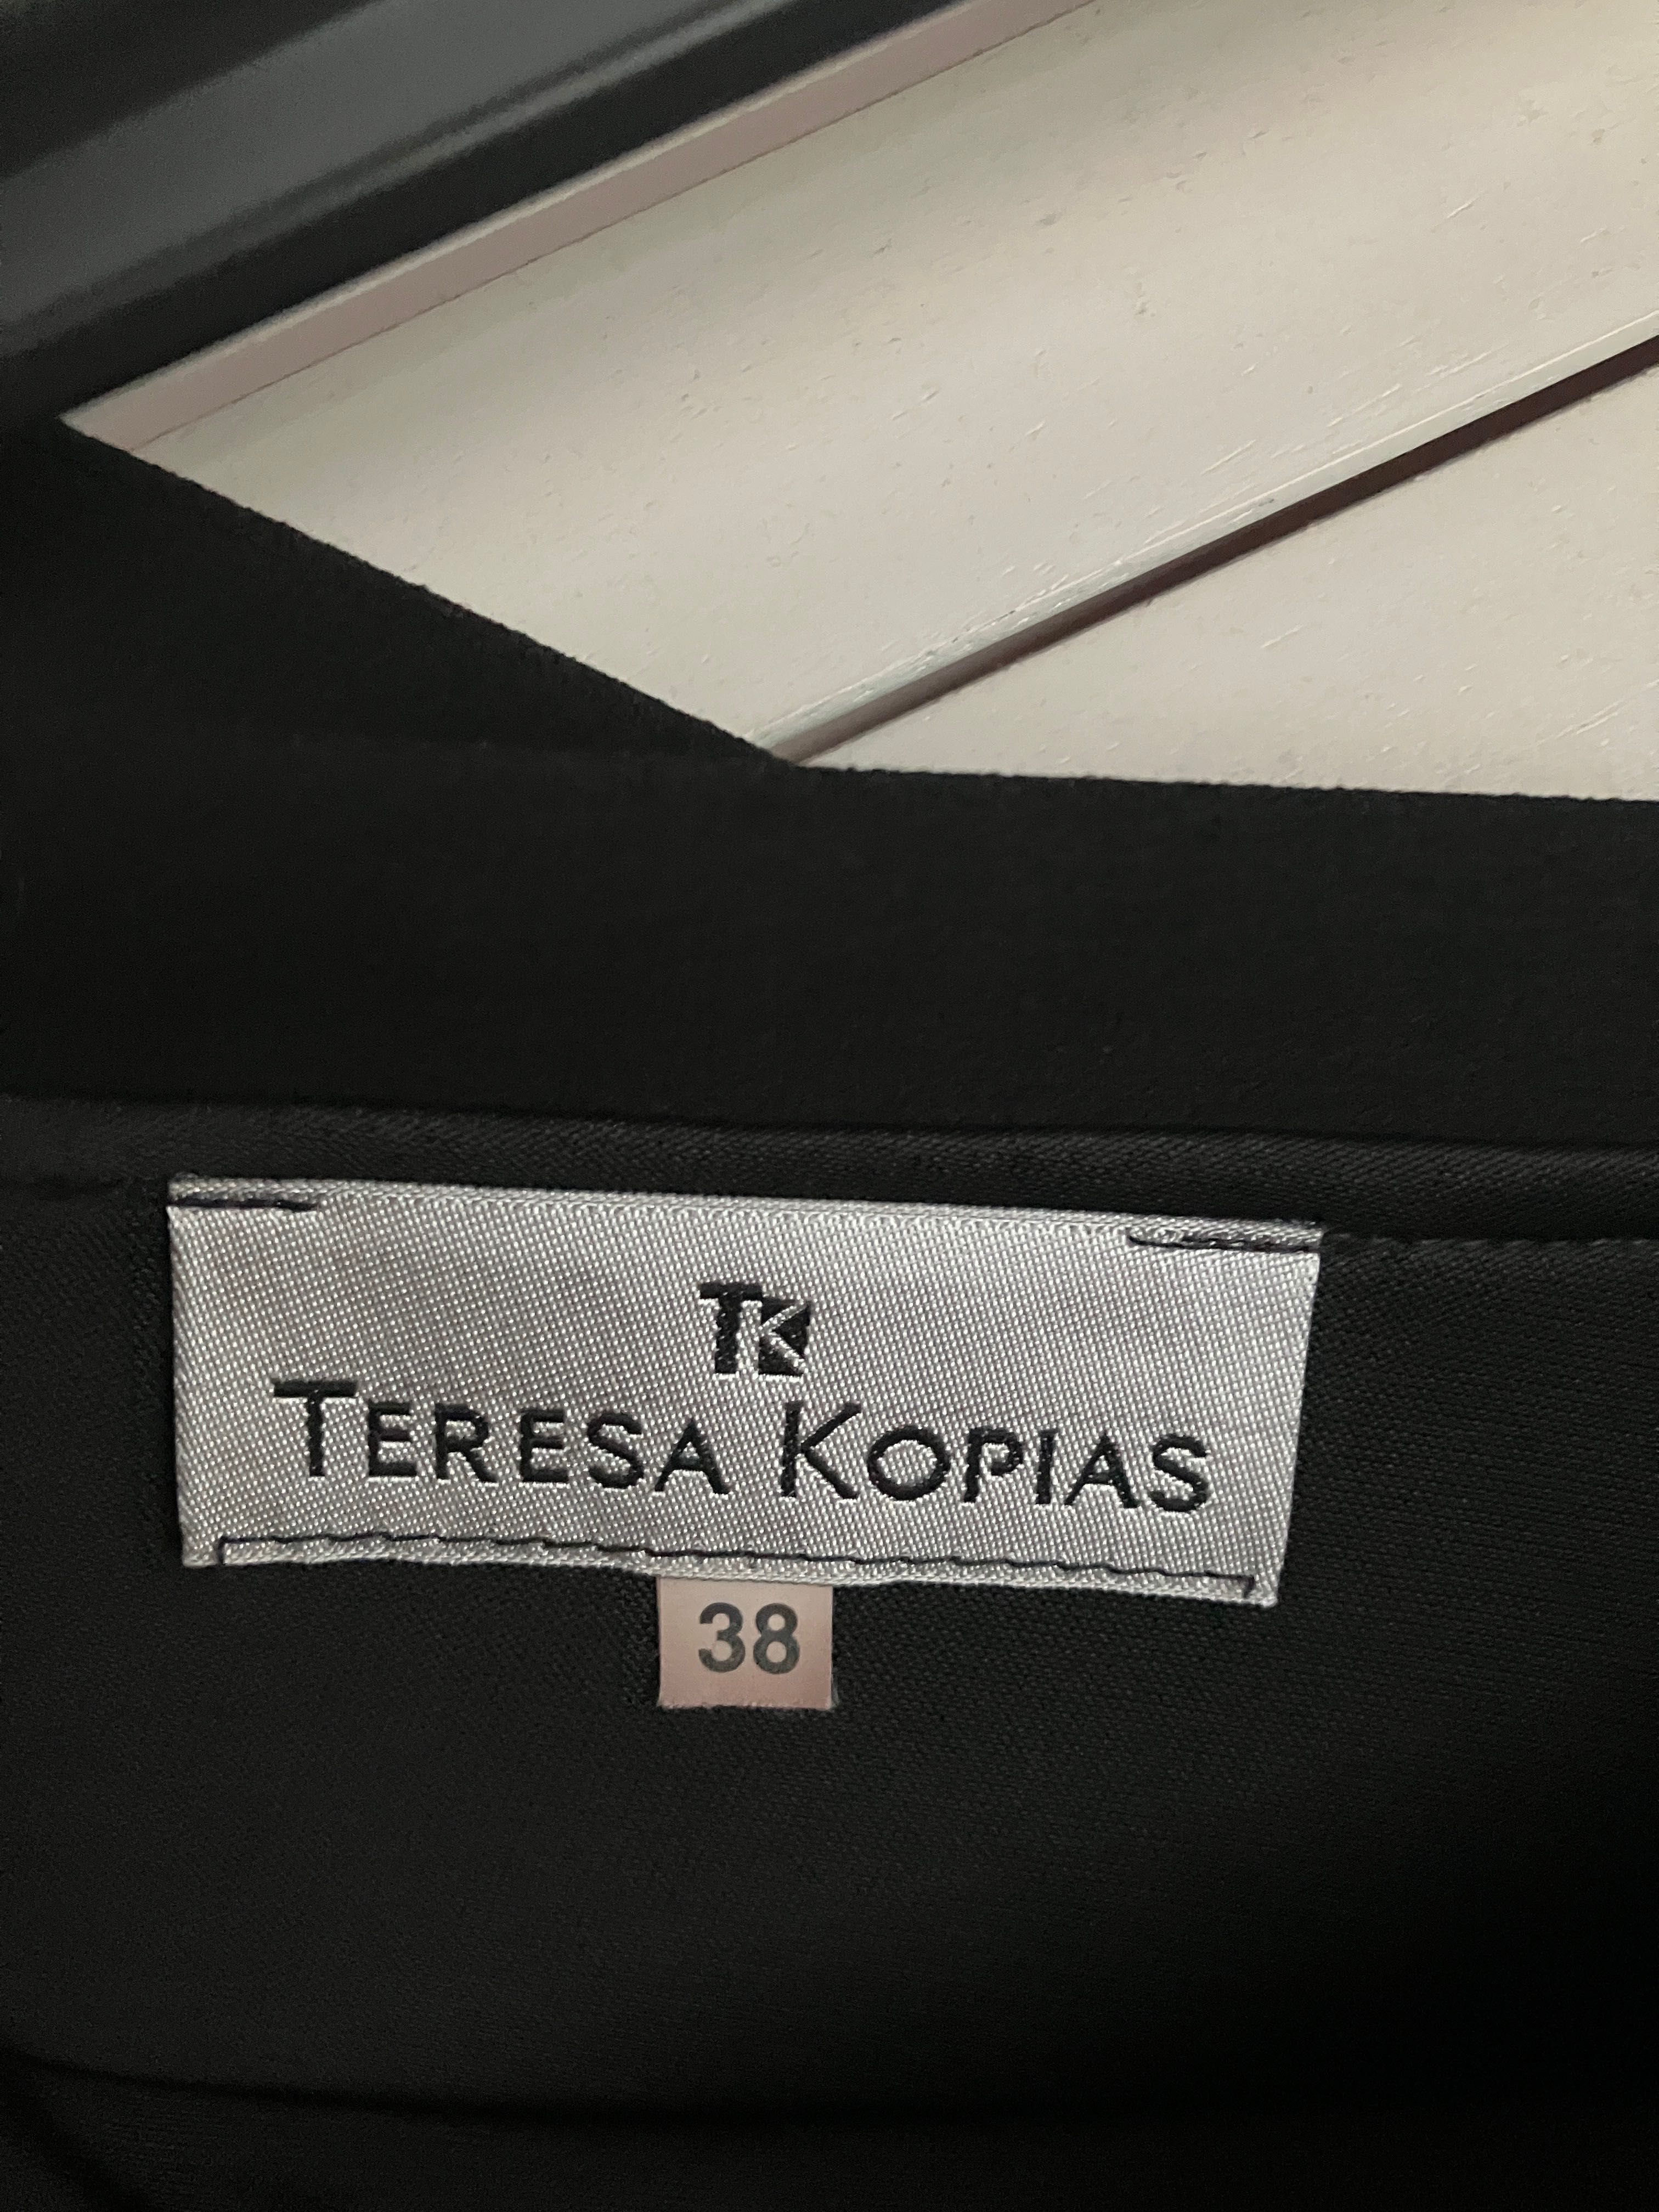 Sukienka - Teresa Kopias (38)